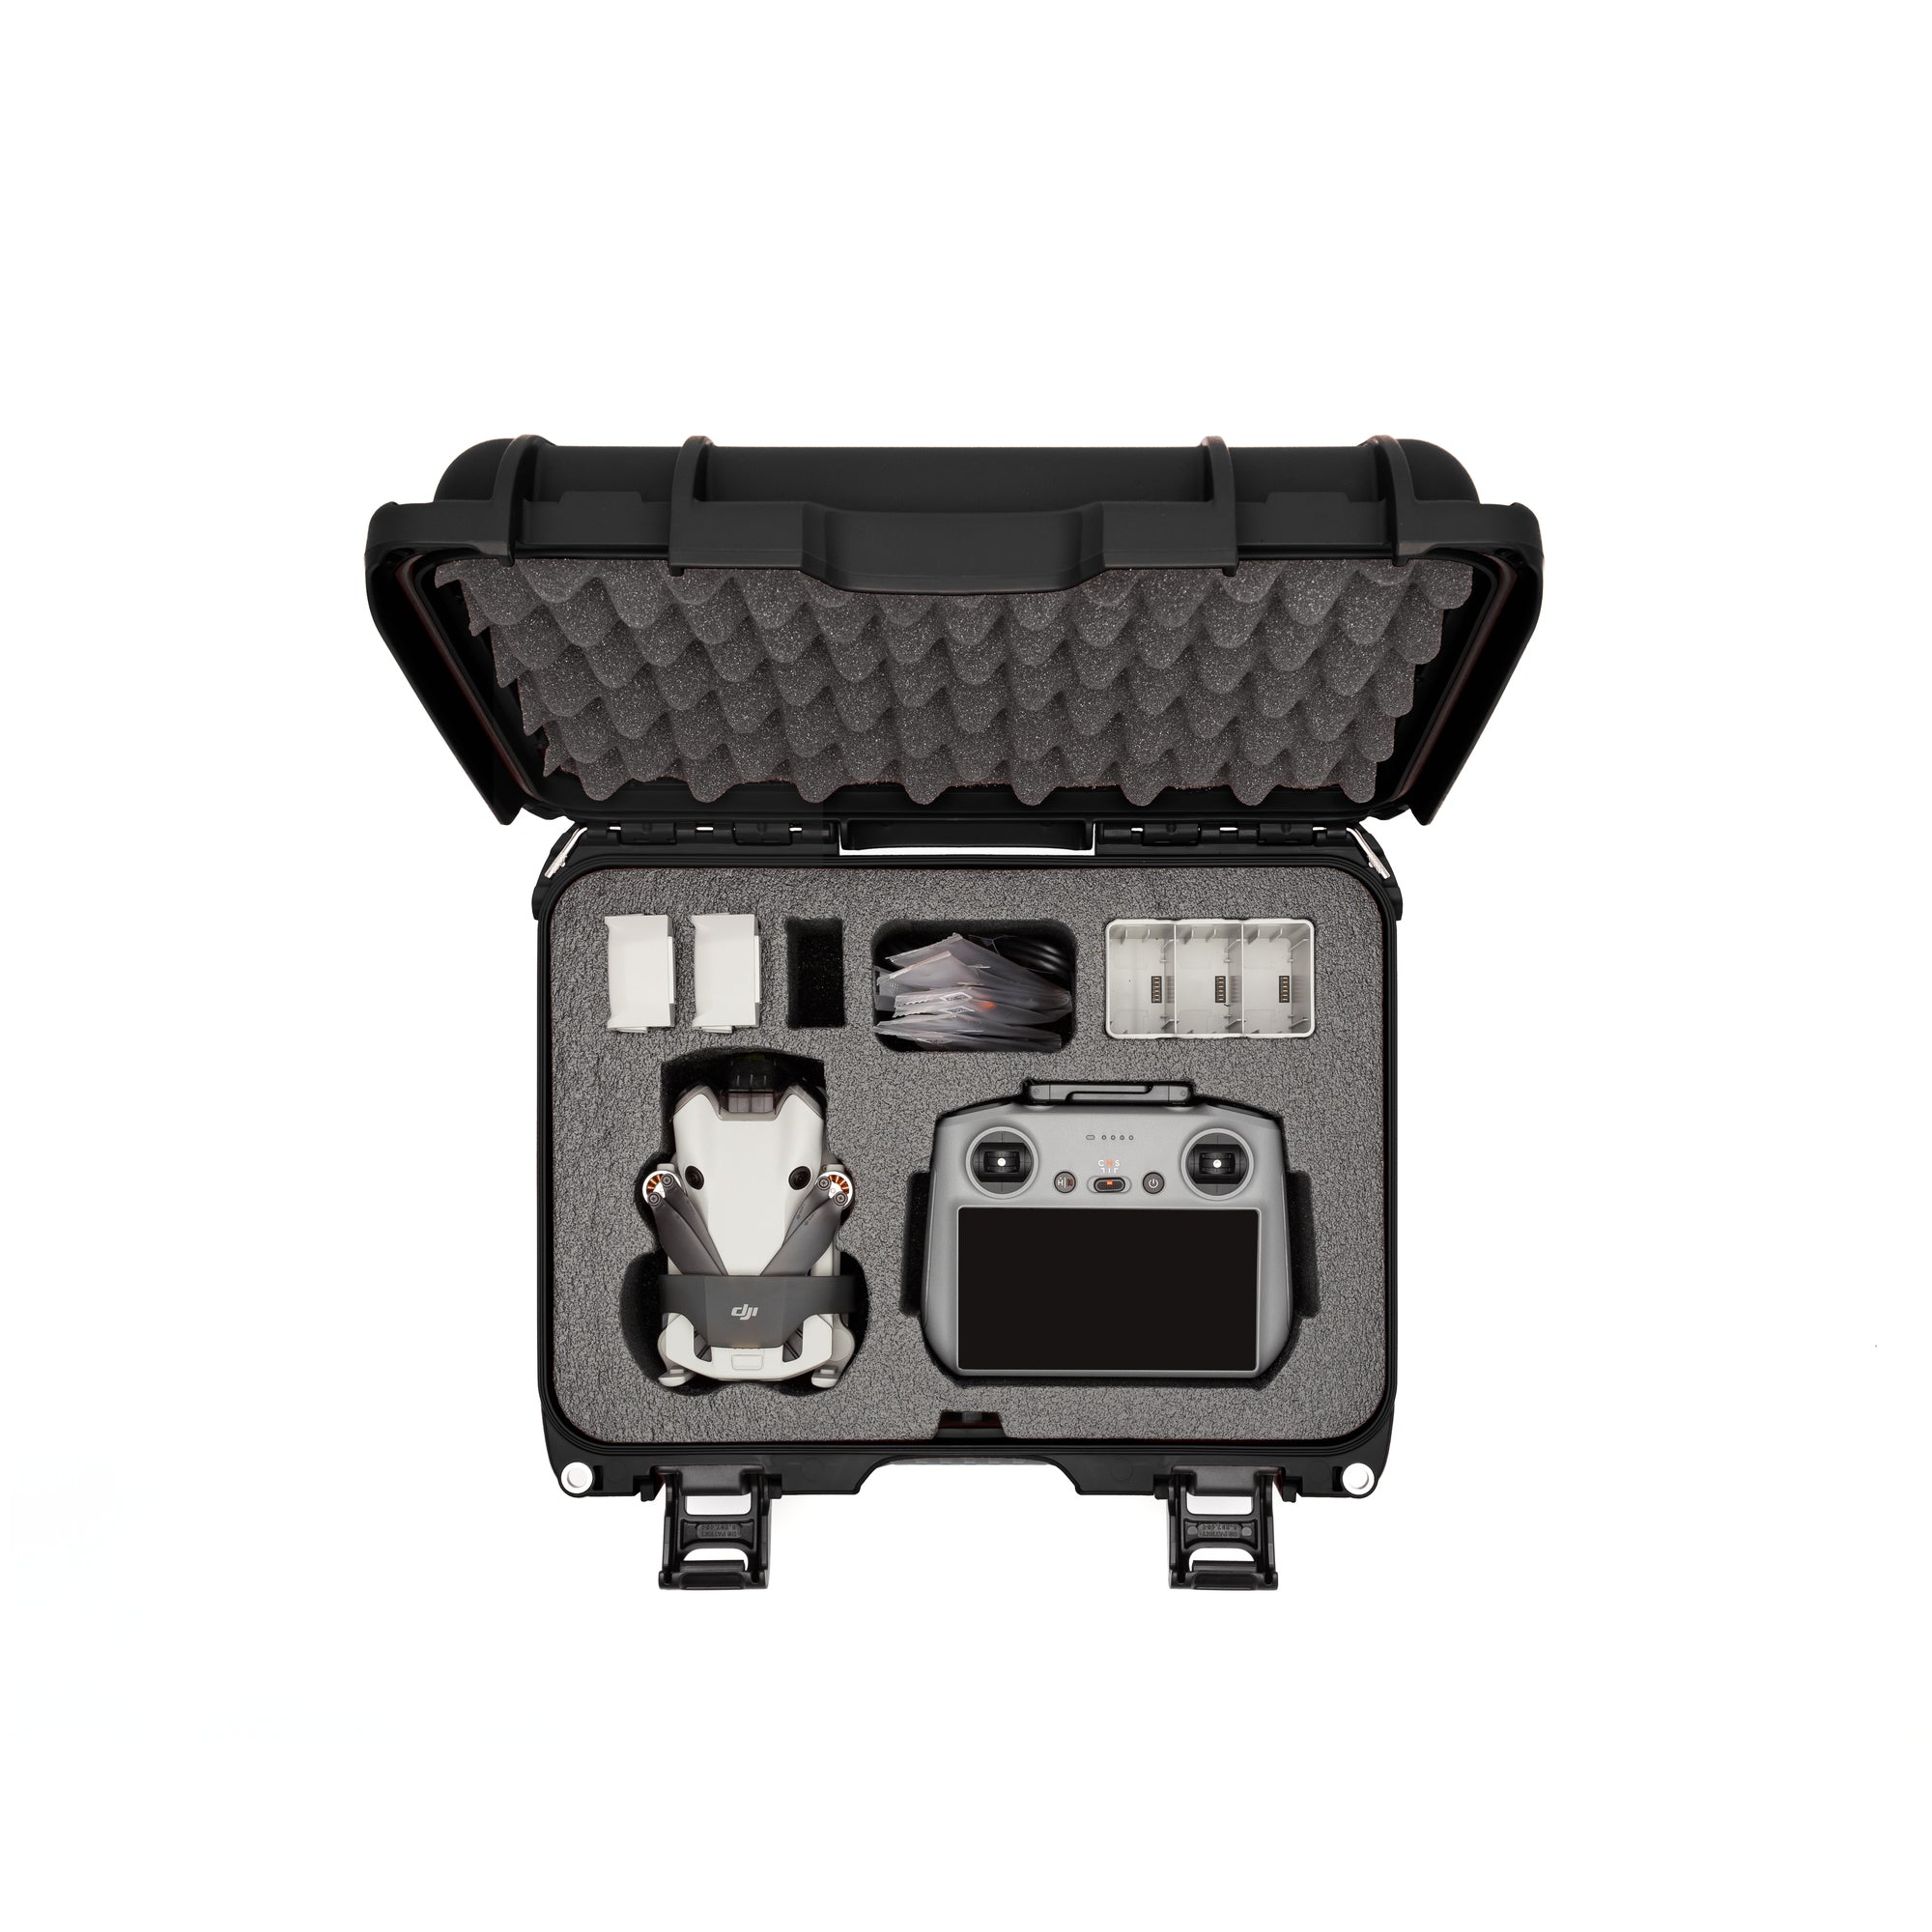 NEW - NANUK 930 For DJI™ RS 3 / RS 3 Pro Combo Hard Case